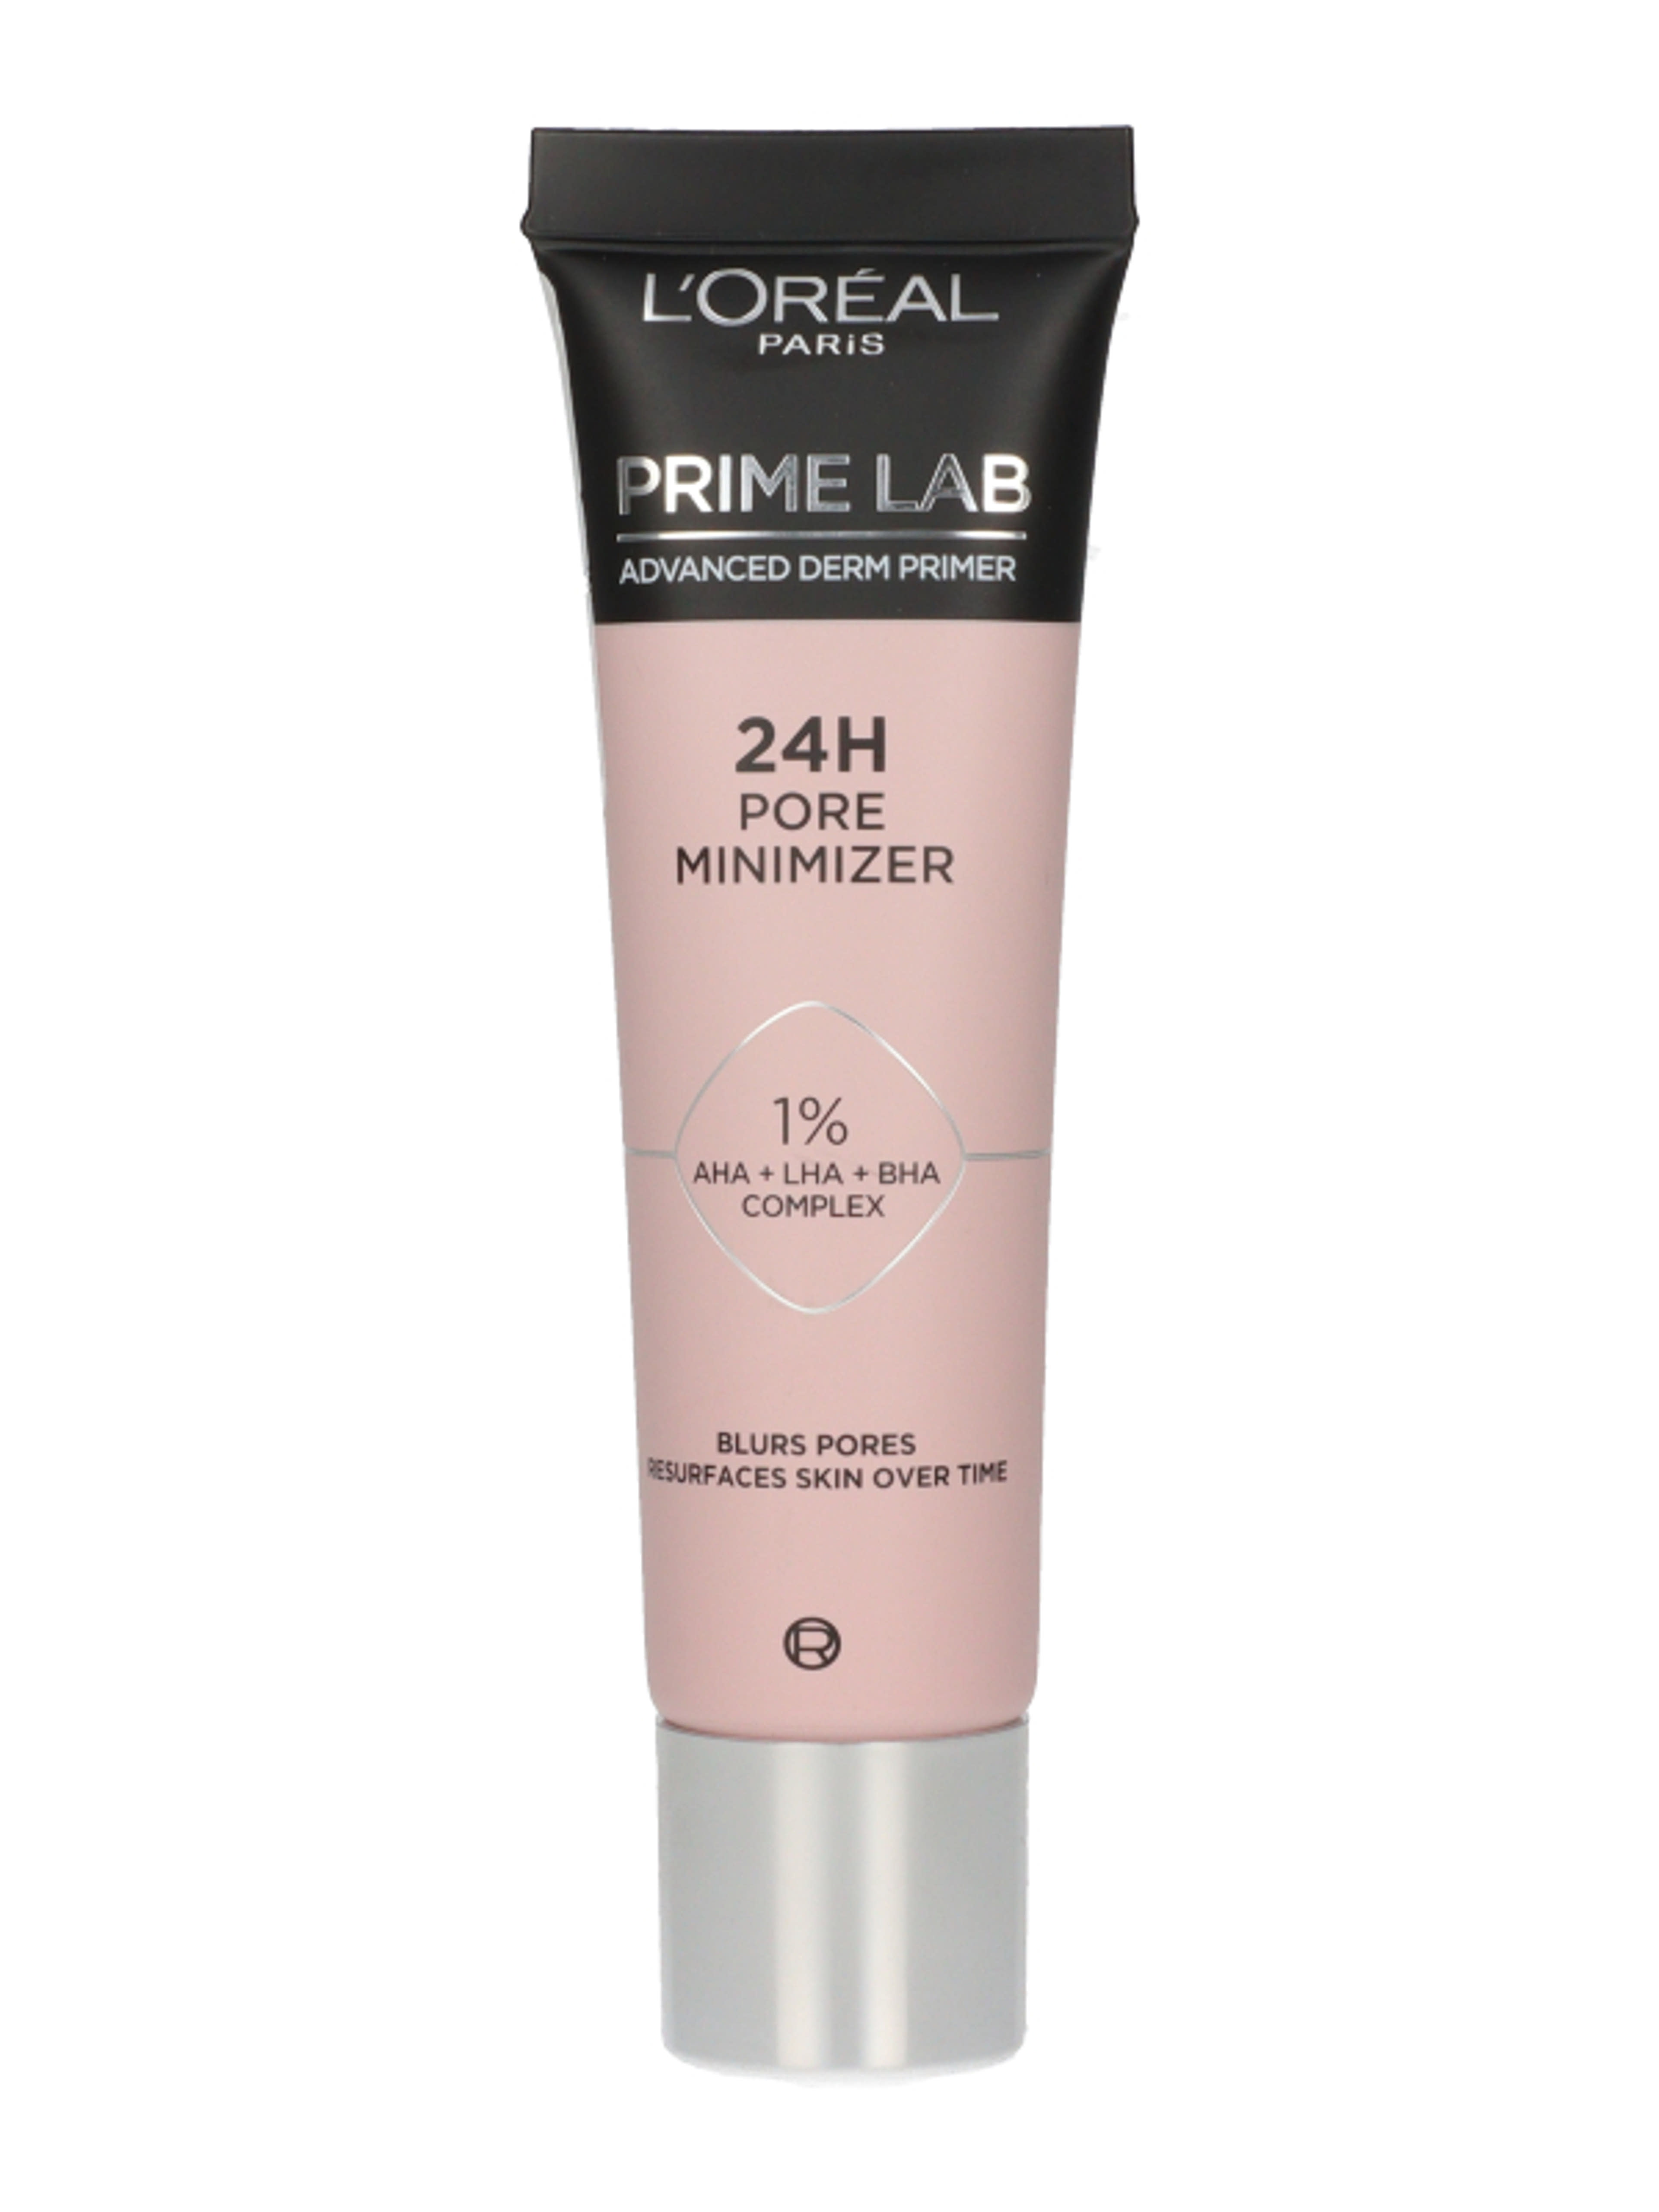 L'Oréal Paris Prime Lab 24H Pore Minimizer primer - 1 db-1